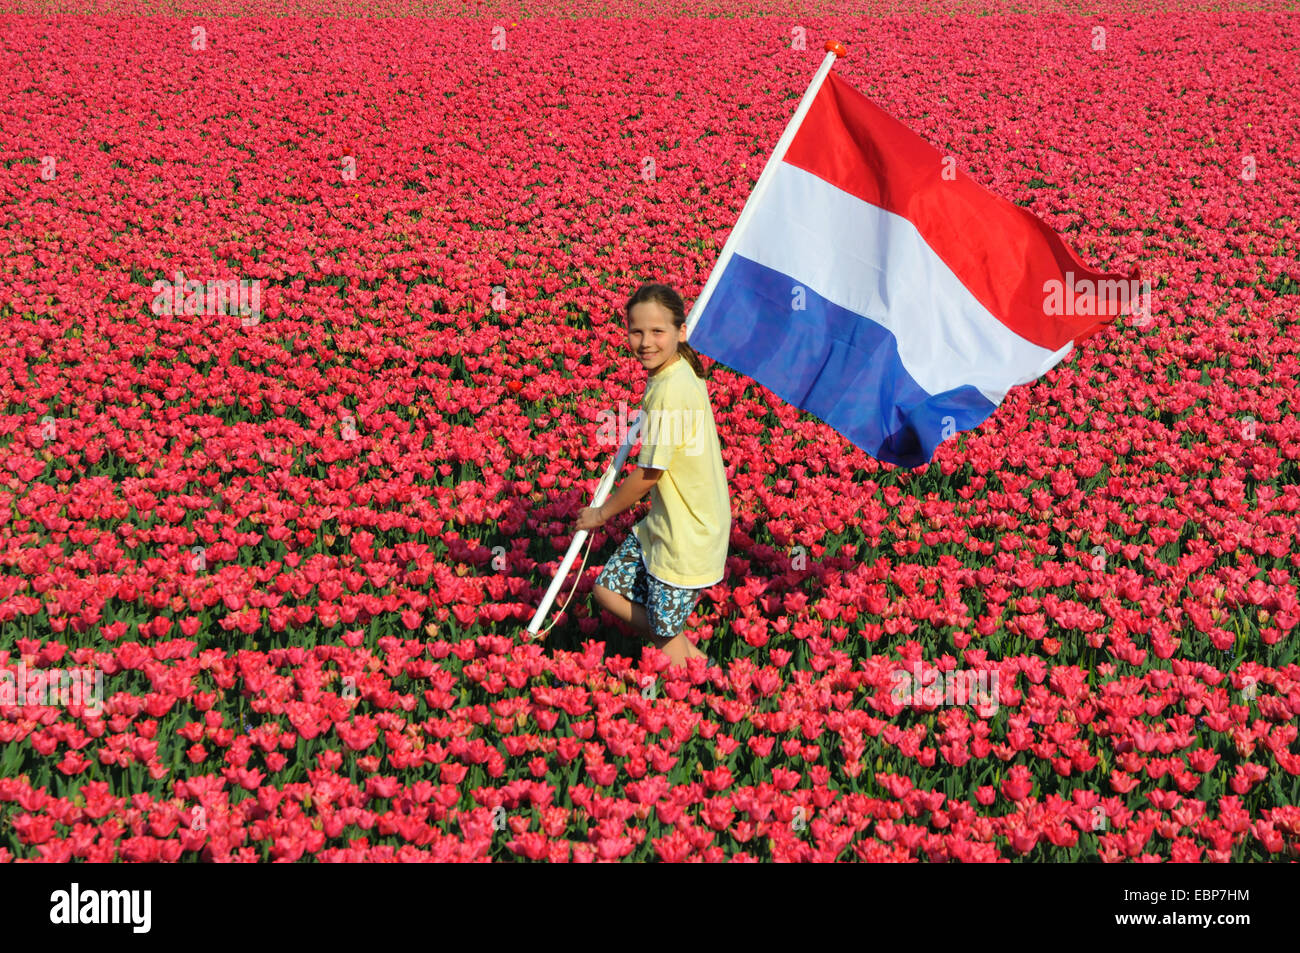 gemeinsamer Garten-Tulpe (Tulipa Gesneriana), junge mit niederländischer Flagge durch blühende Tulpenfeld, Niederlande Stockfoto